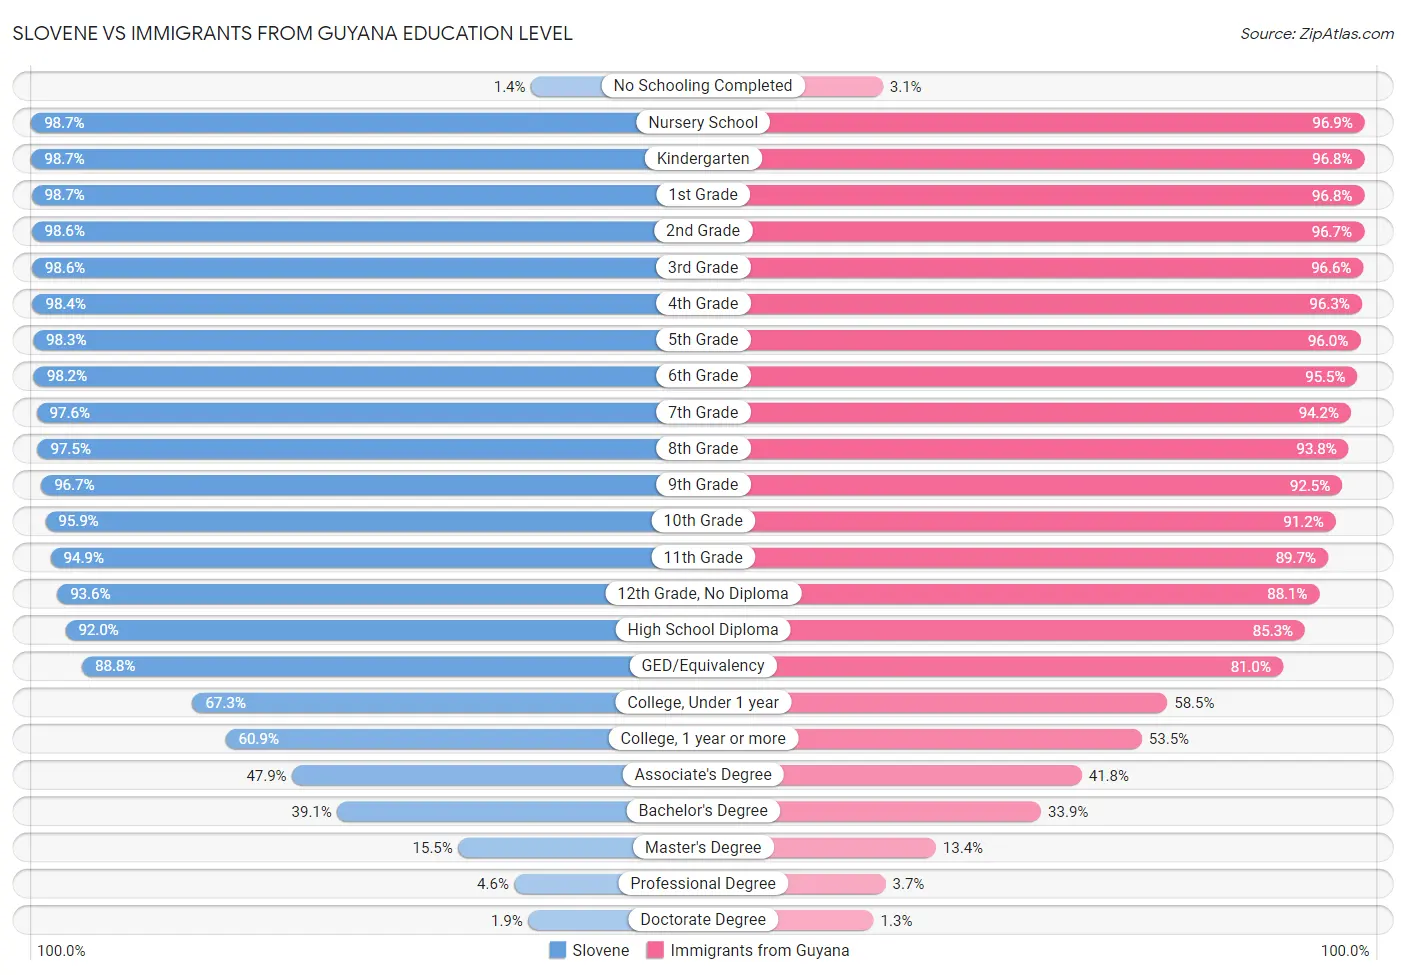 Slovene vs Immigrants from Guyana Education Level